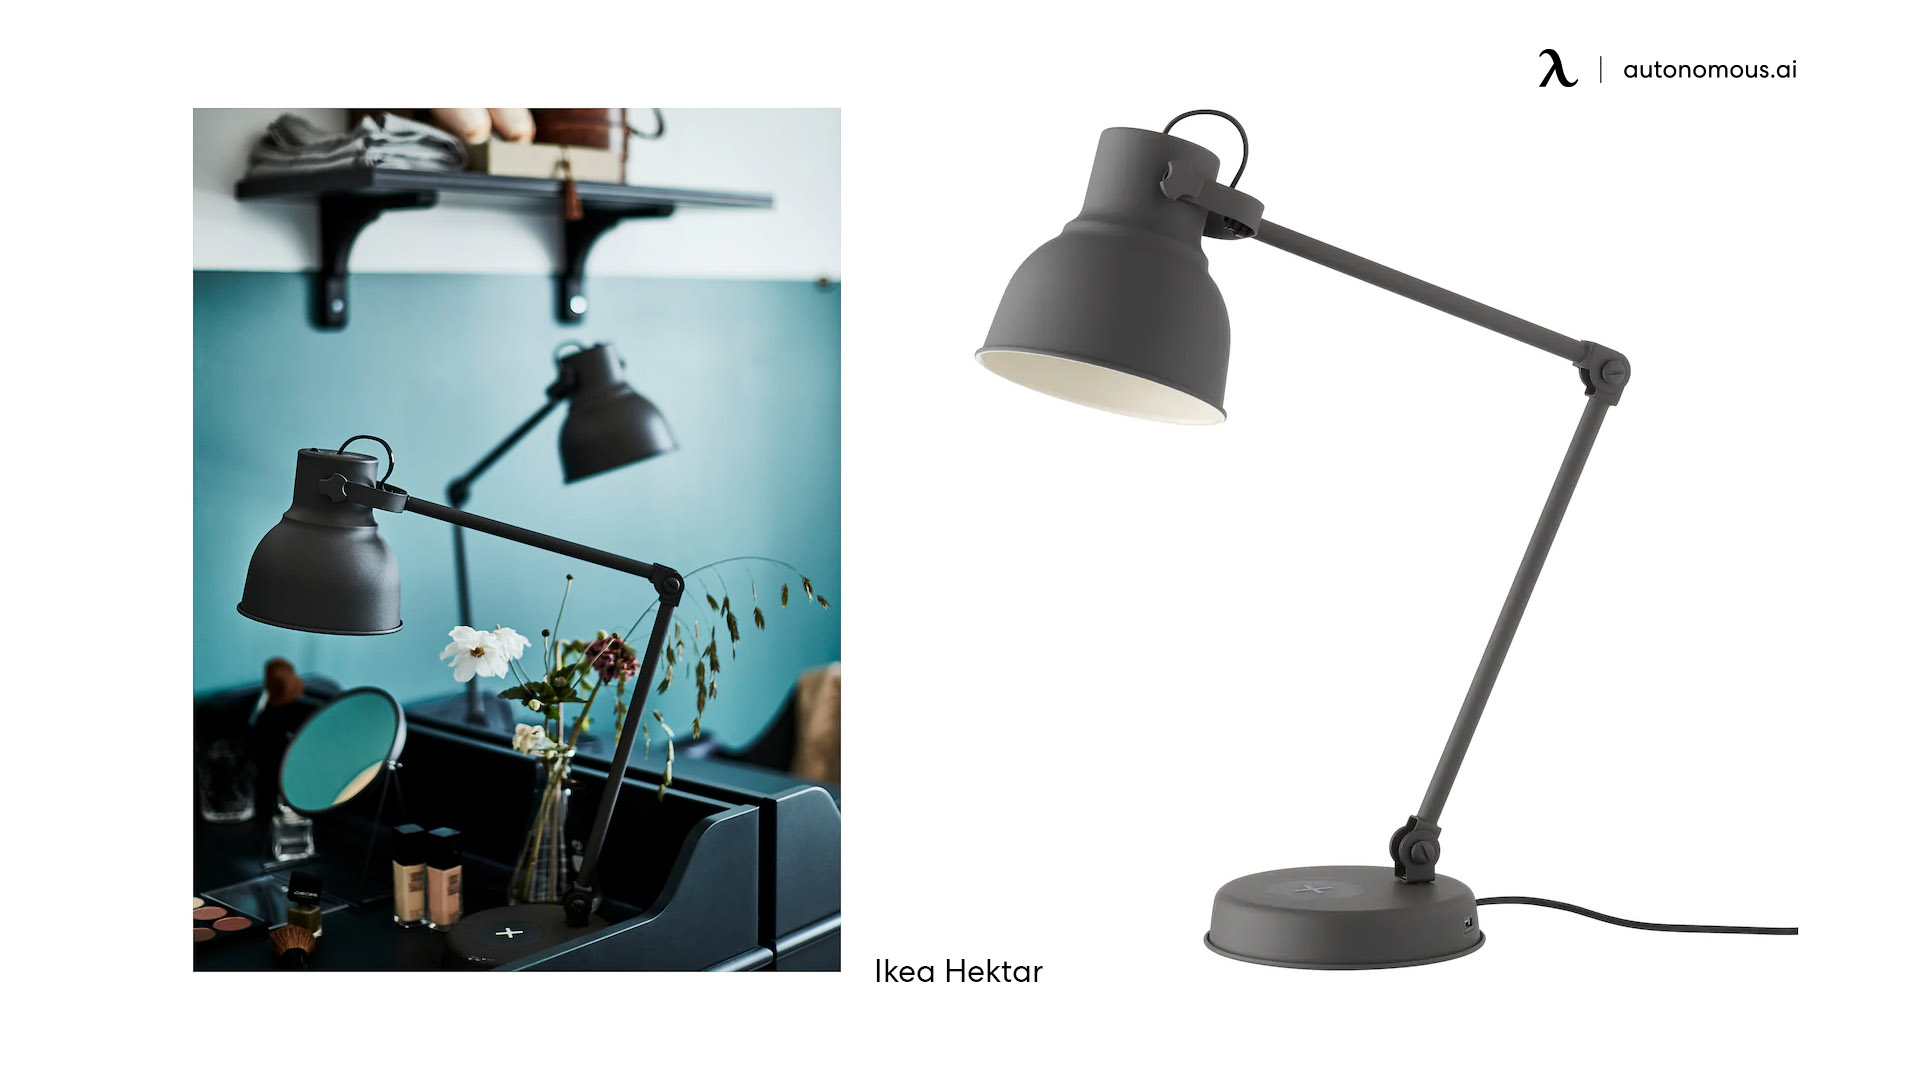 Ikea Hektar black desk lamp